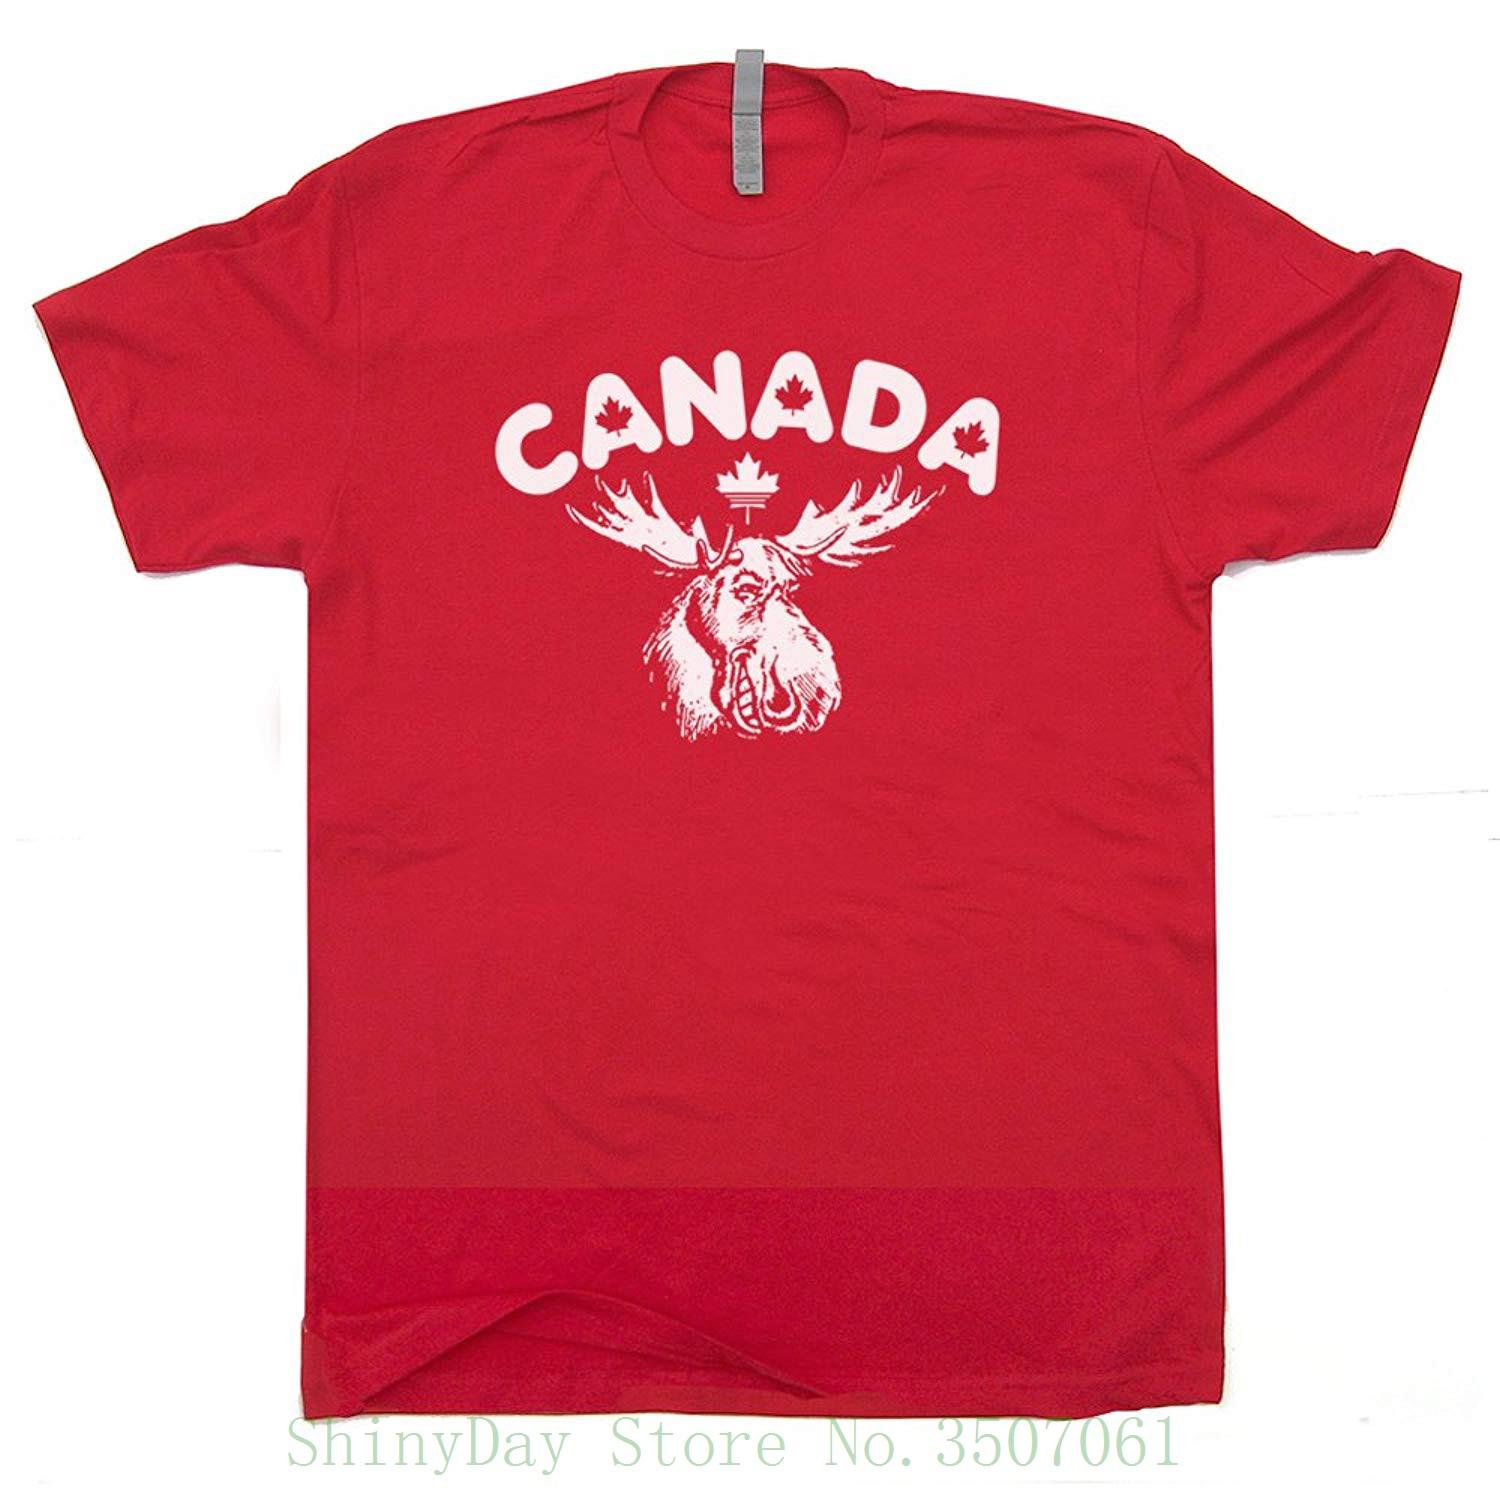 Canadian Leaf Logo - Canada Canada Shirt Maple Leaf Logo Vintage Moose Canadian Flag Cool